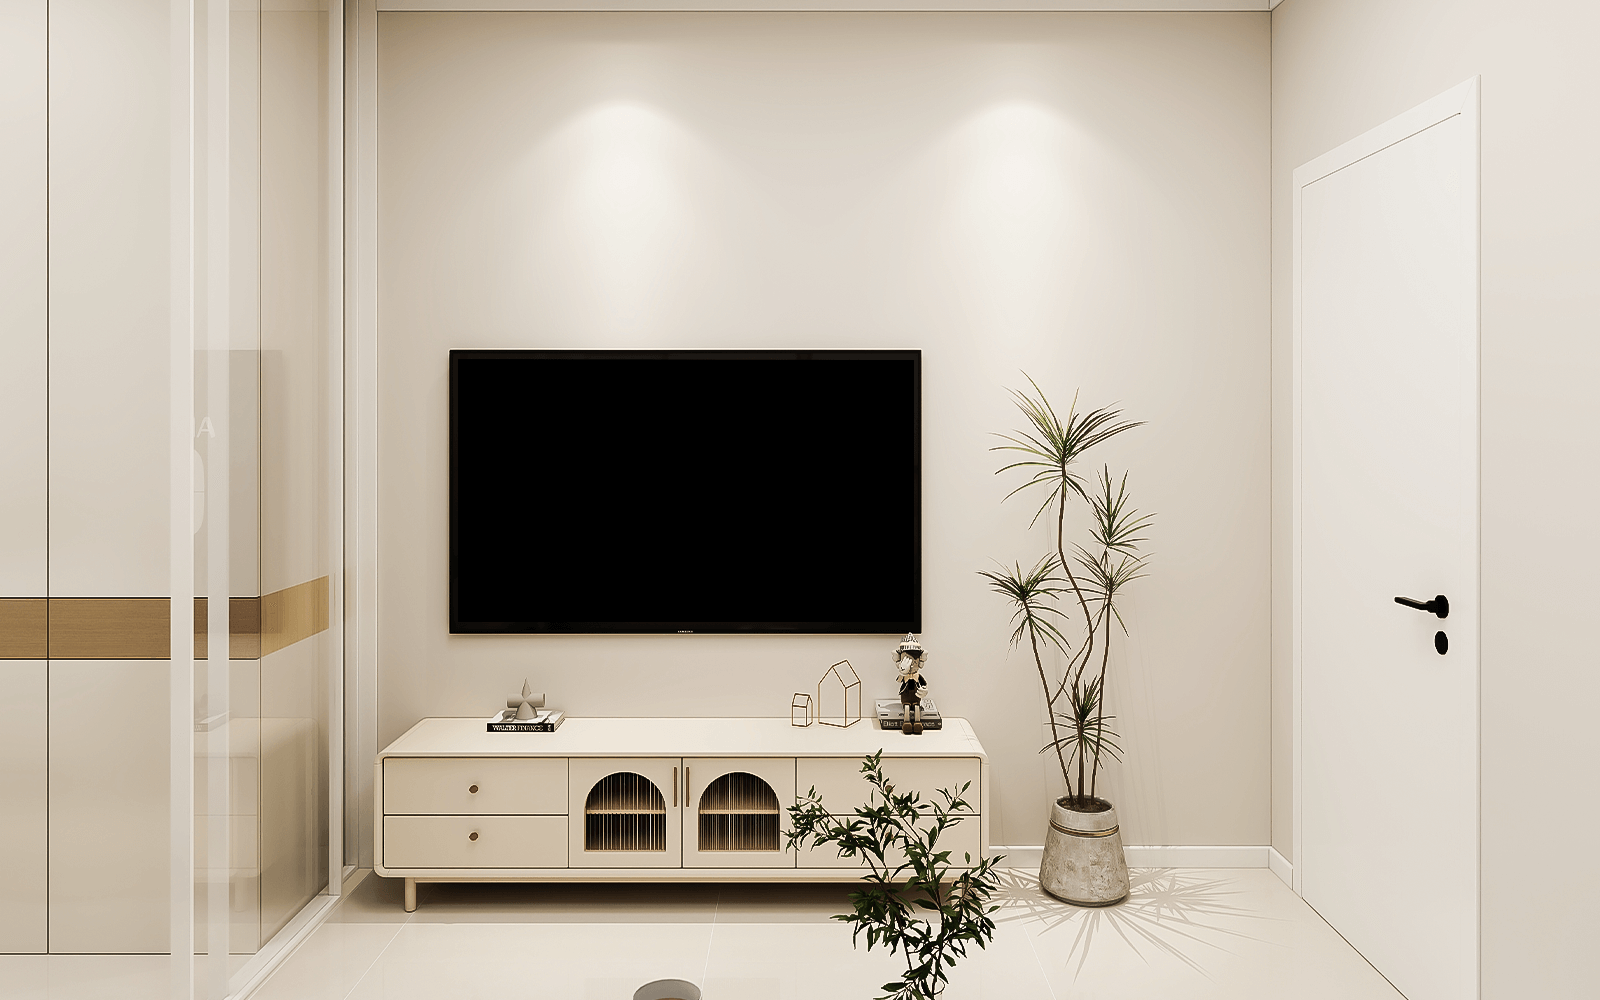 客厅虽小，但是一应俱全，电视采用了挂壁方式，电视柜为多抽屉设计，不浪费柜体空间，开关也更方便，这种还更好移动和打扫卫生。米白色的电视柜与白色地砖和墙面搭配，不仅视觉和谐，还显得空间很大。